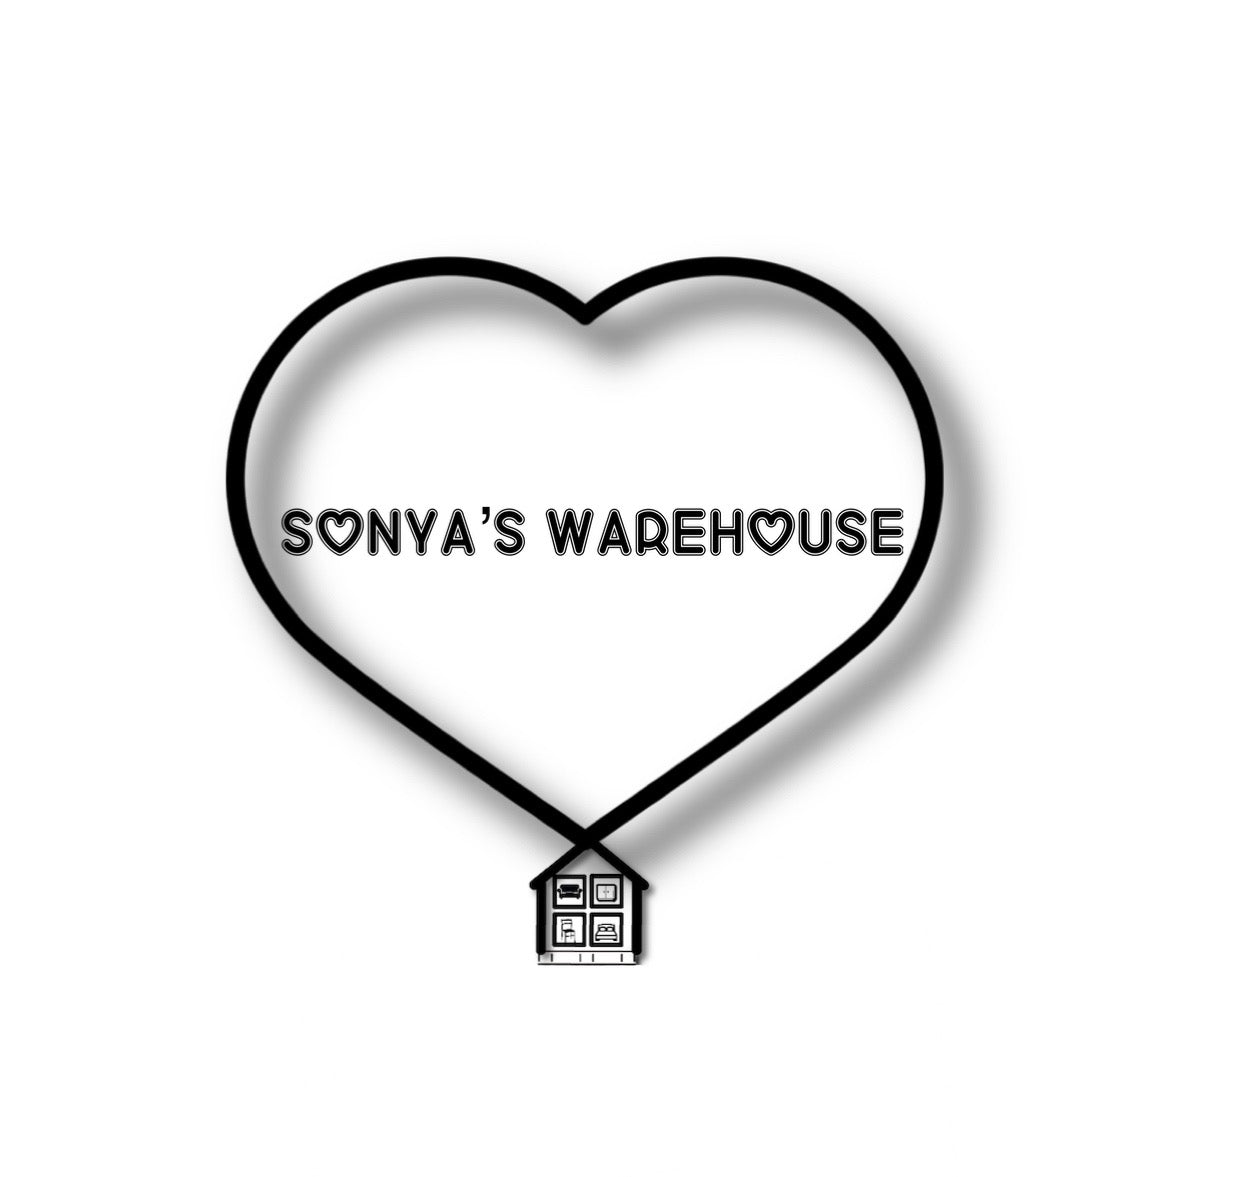 Sonya's Warehouse